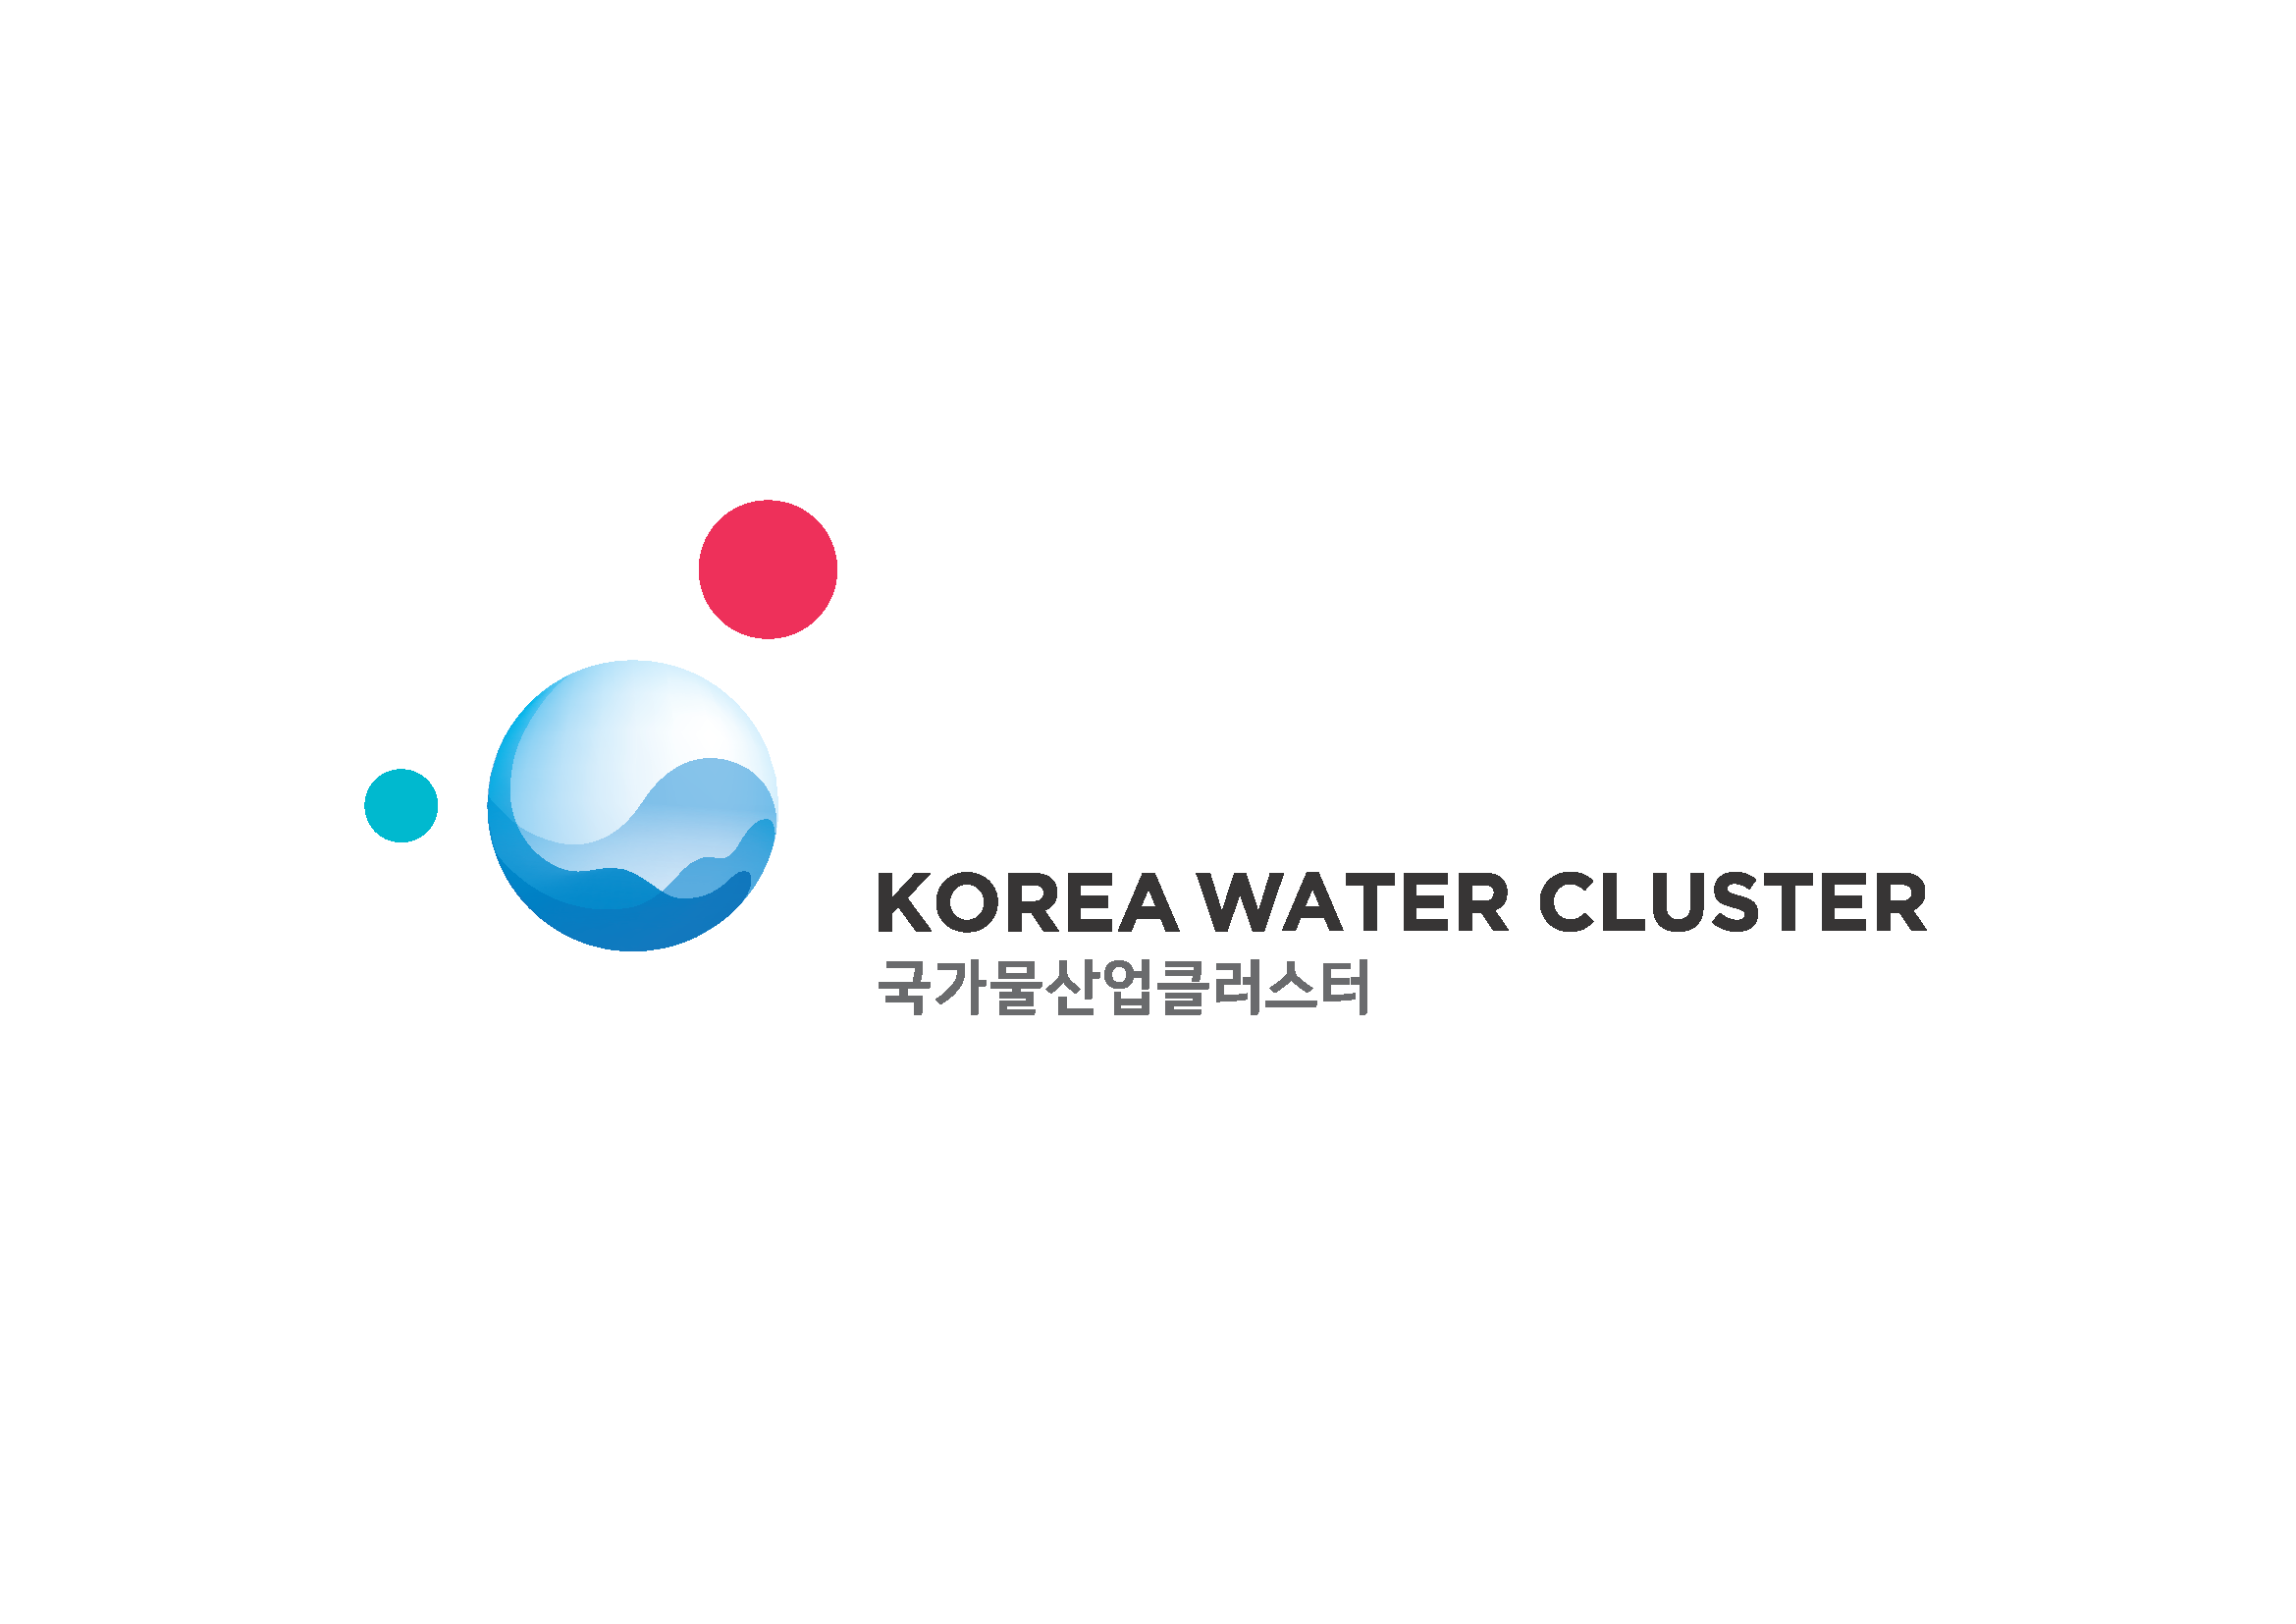 Korea Water Cluster